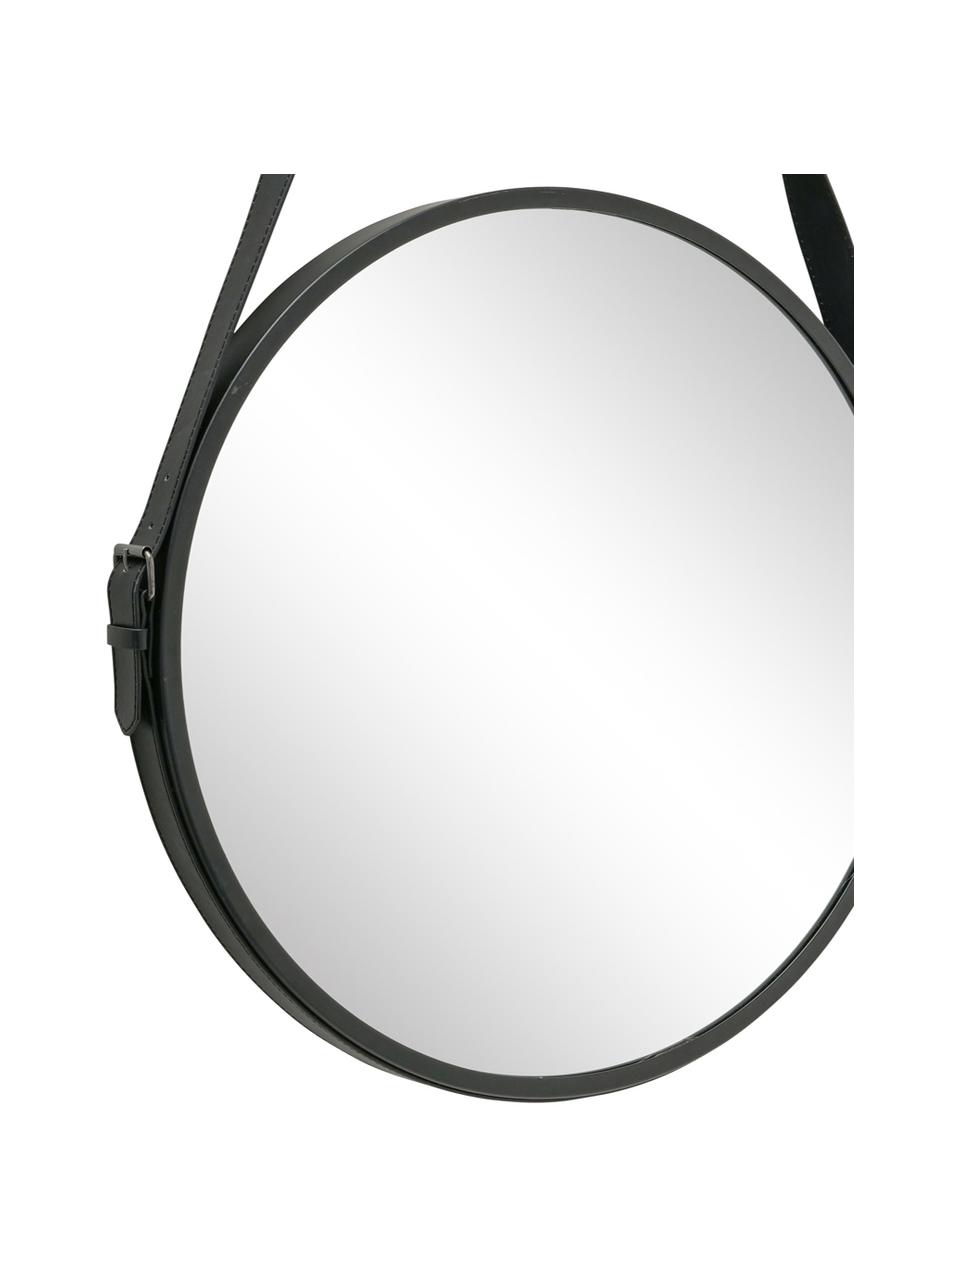 Okrągłe lustro ścienne Paso, Metal, szkło lustrzane, Czarny, S 48 x W 73 cm